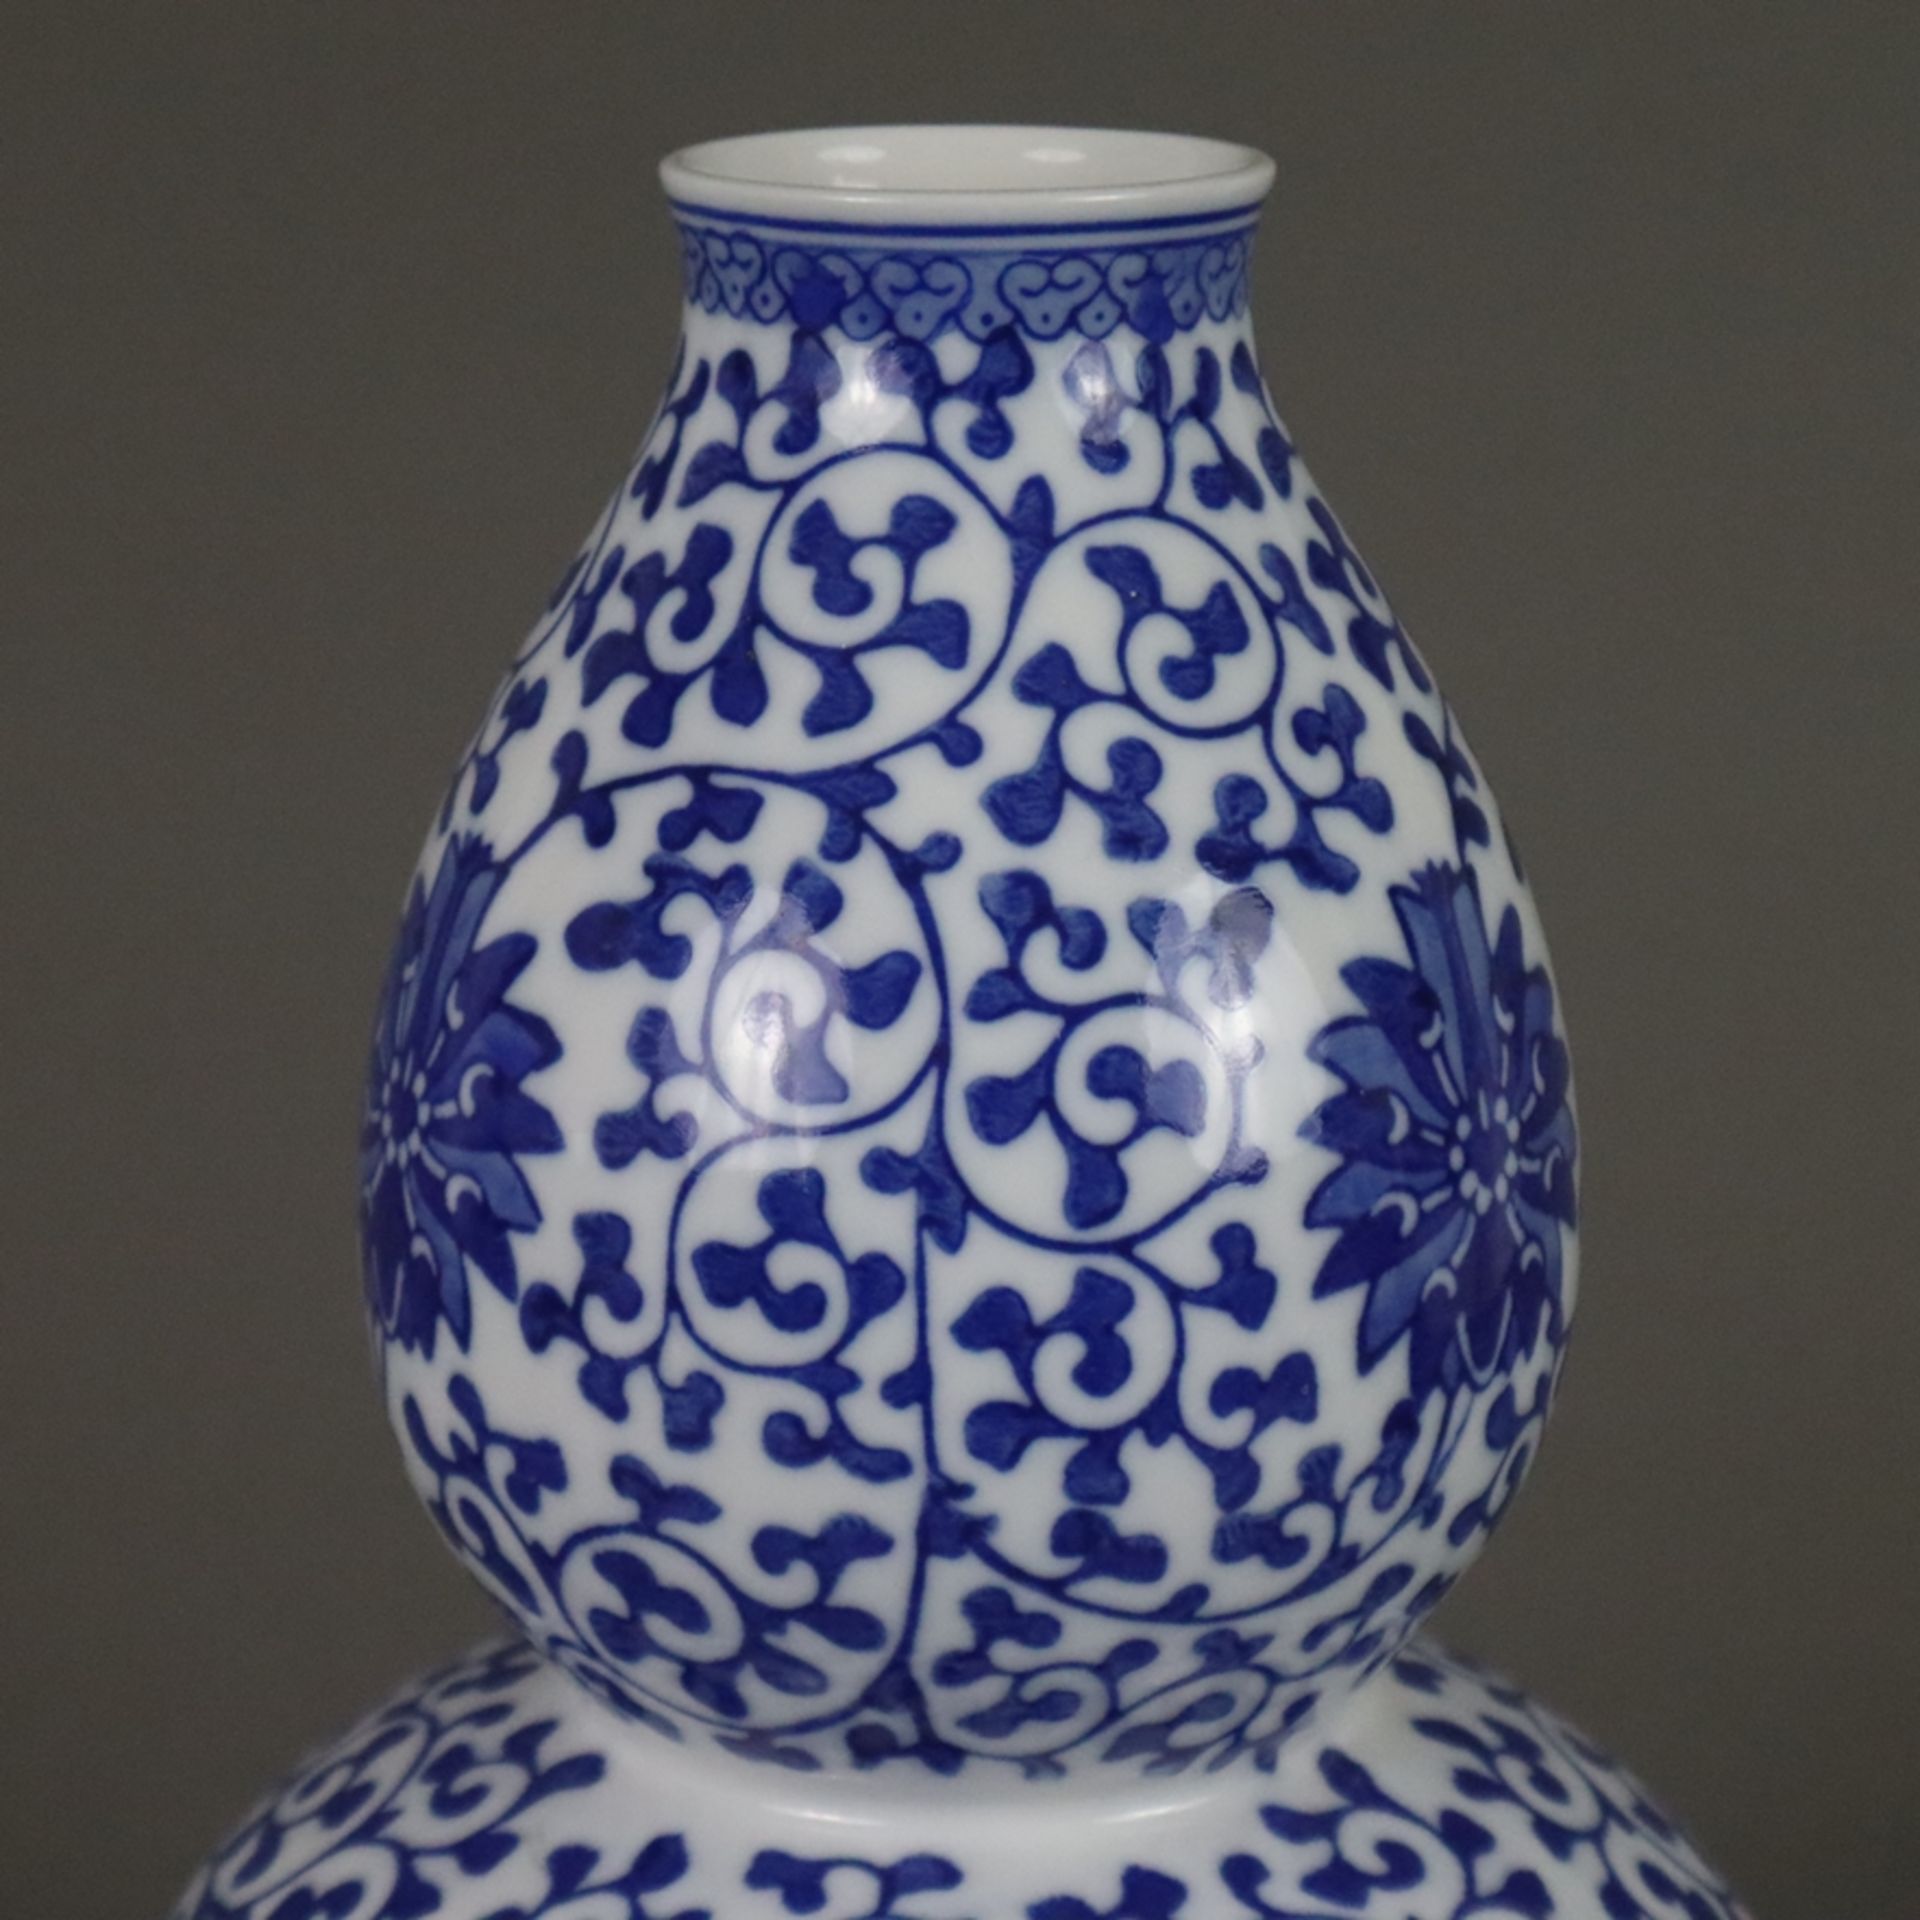 Doppelkürbisvase - China 20.Jh., Porzellan, Dekor mit mäandrierenden Lotosranken in Unterglasurblau - Bild 5 aus 8